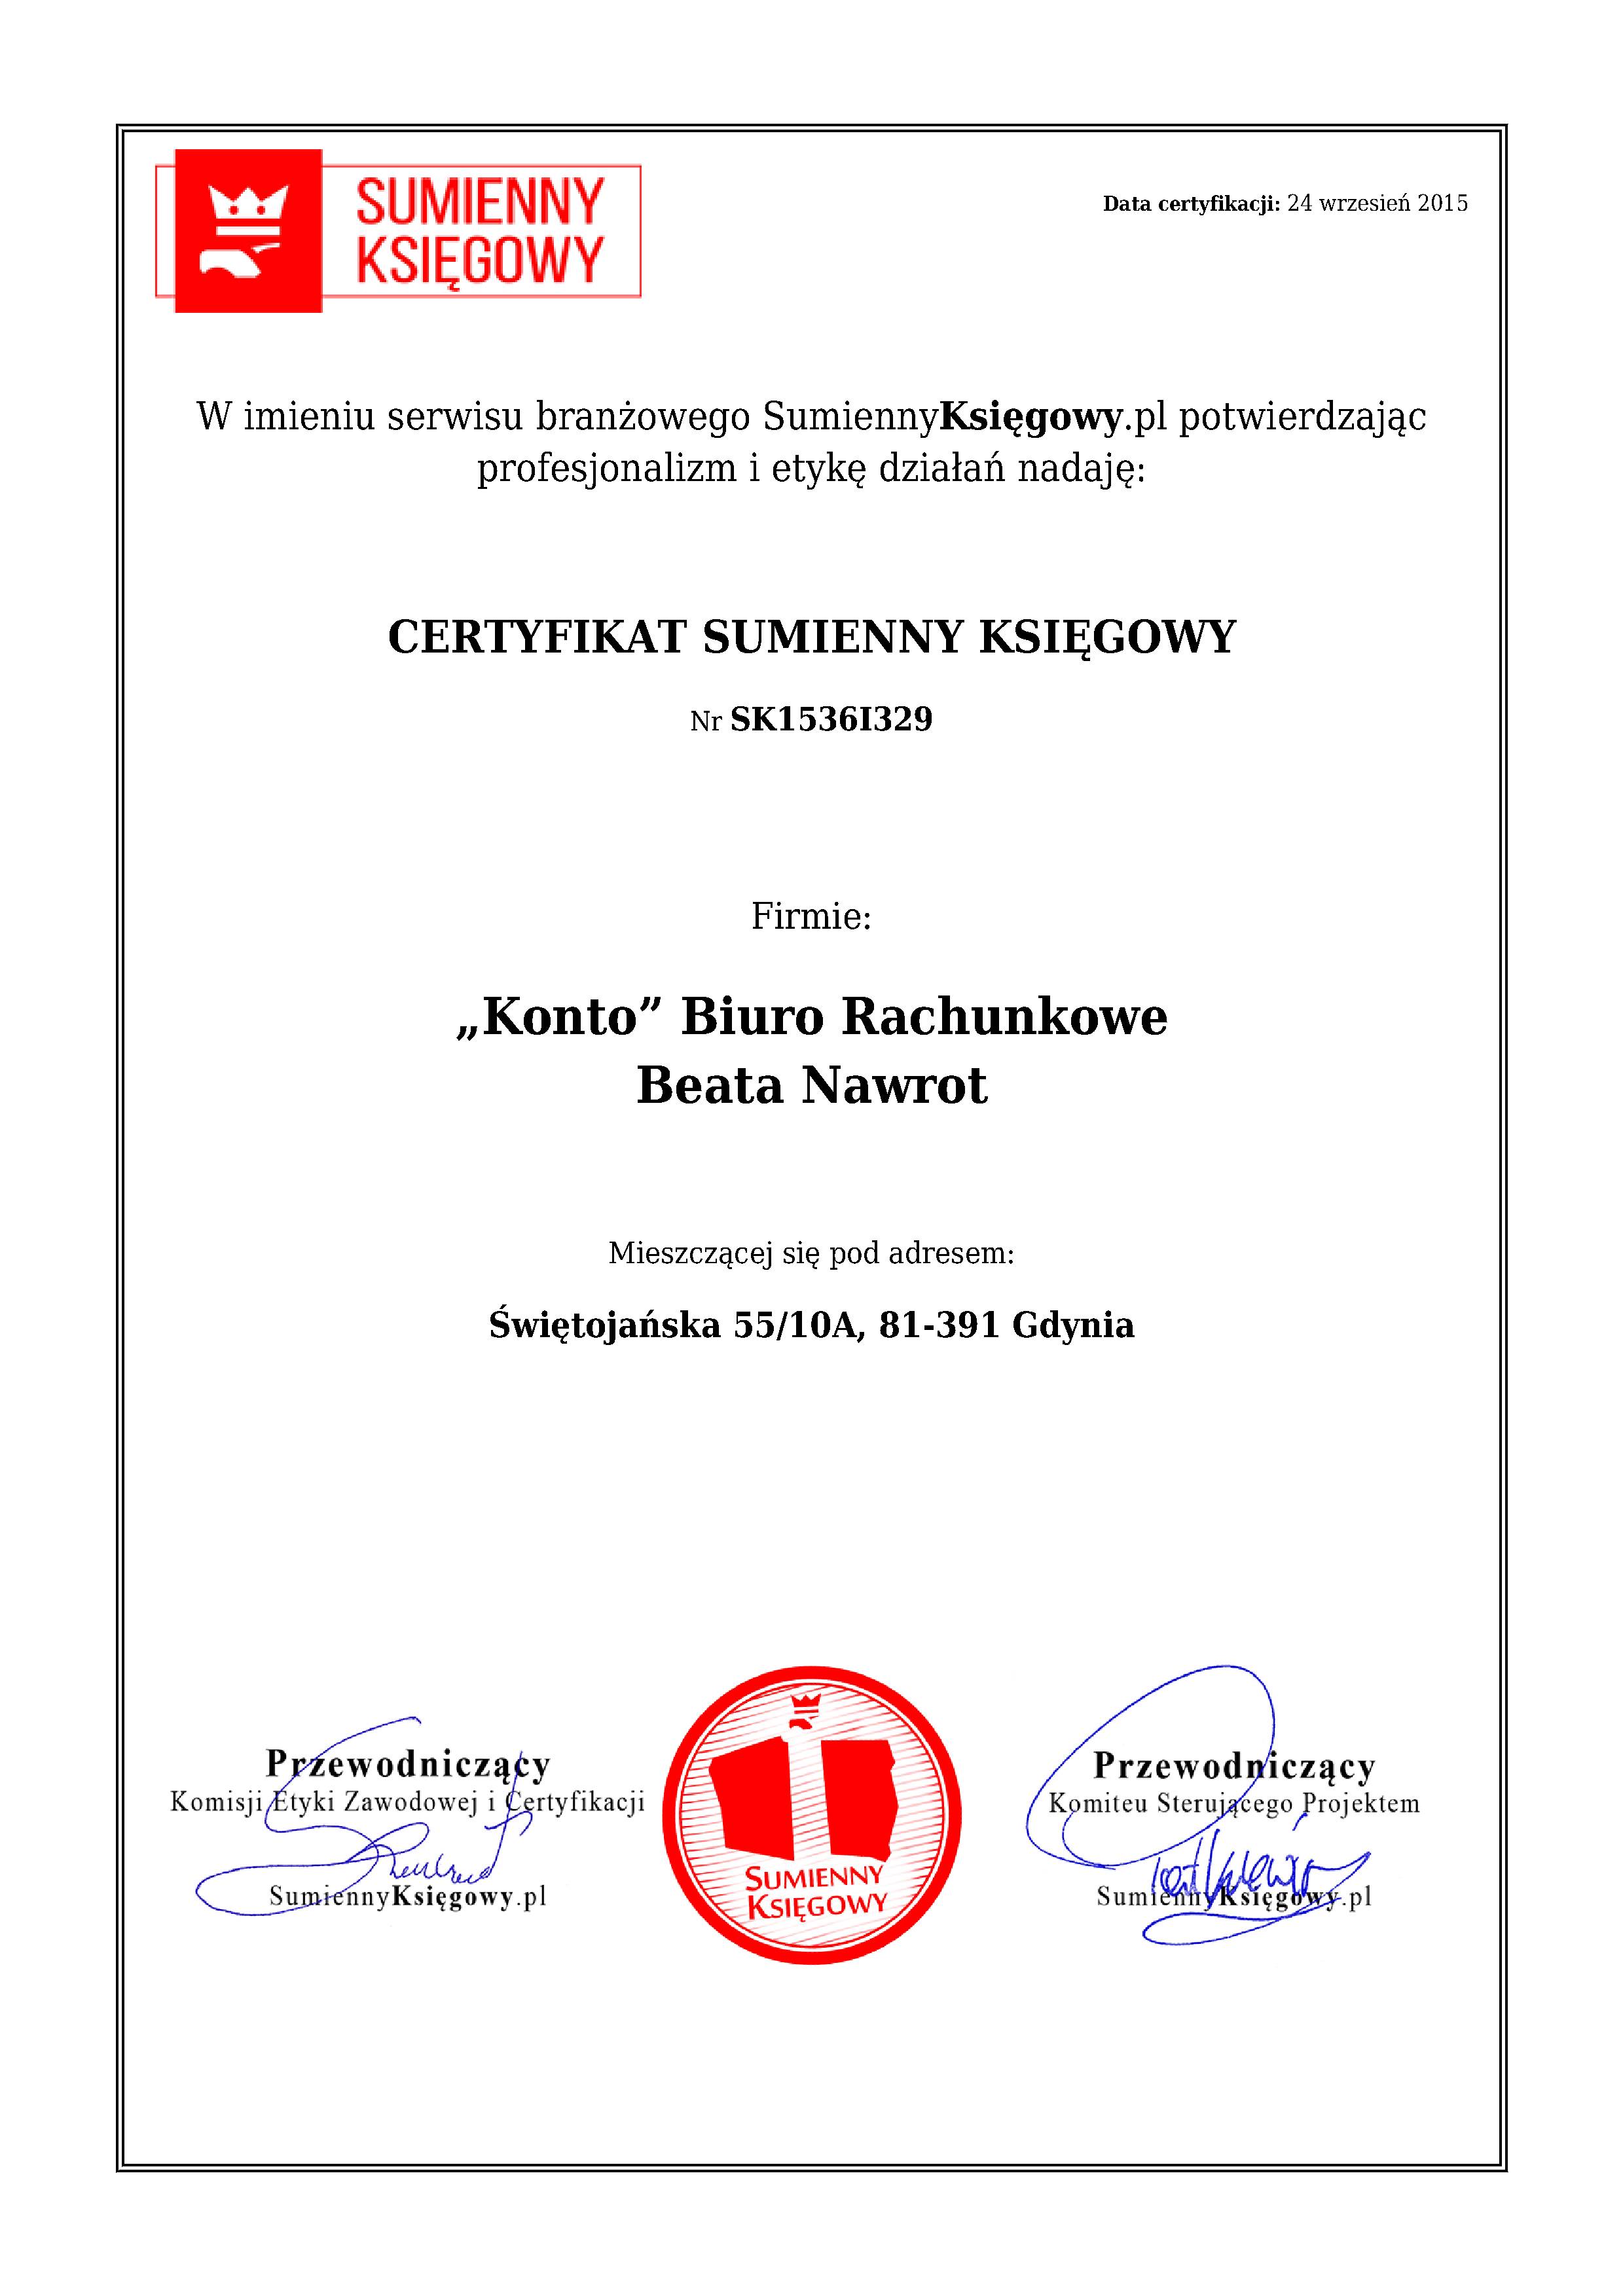 „Konto” Biuro Rachunkowe Beata Nawrot certyfikat 1